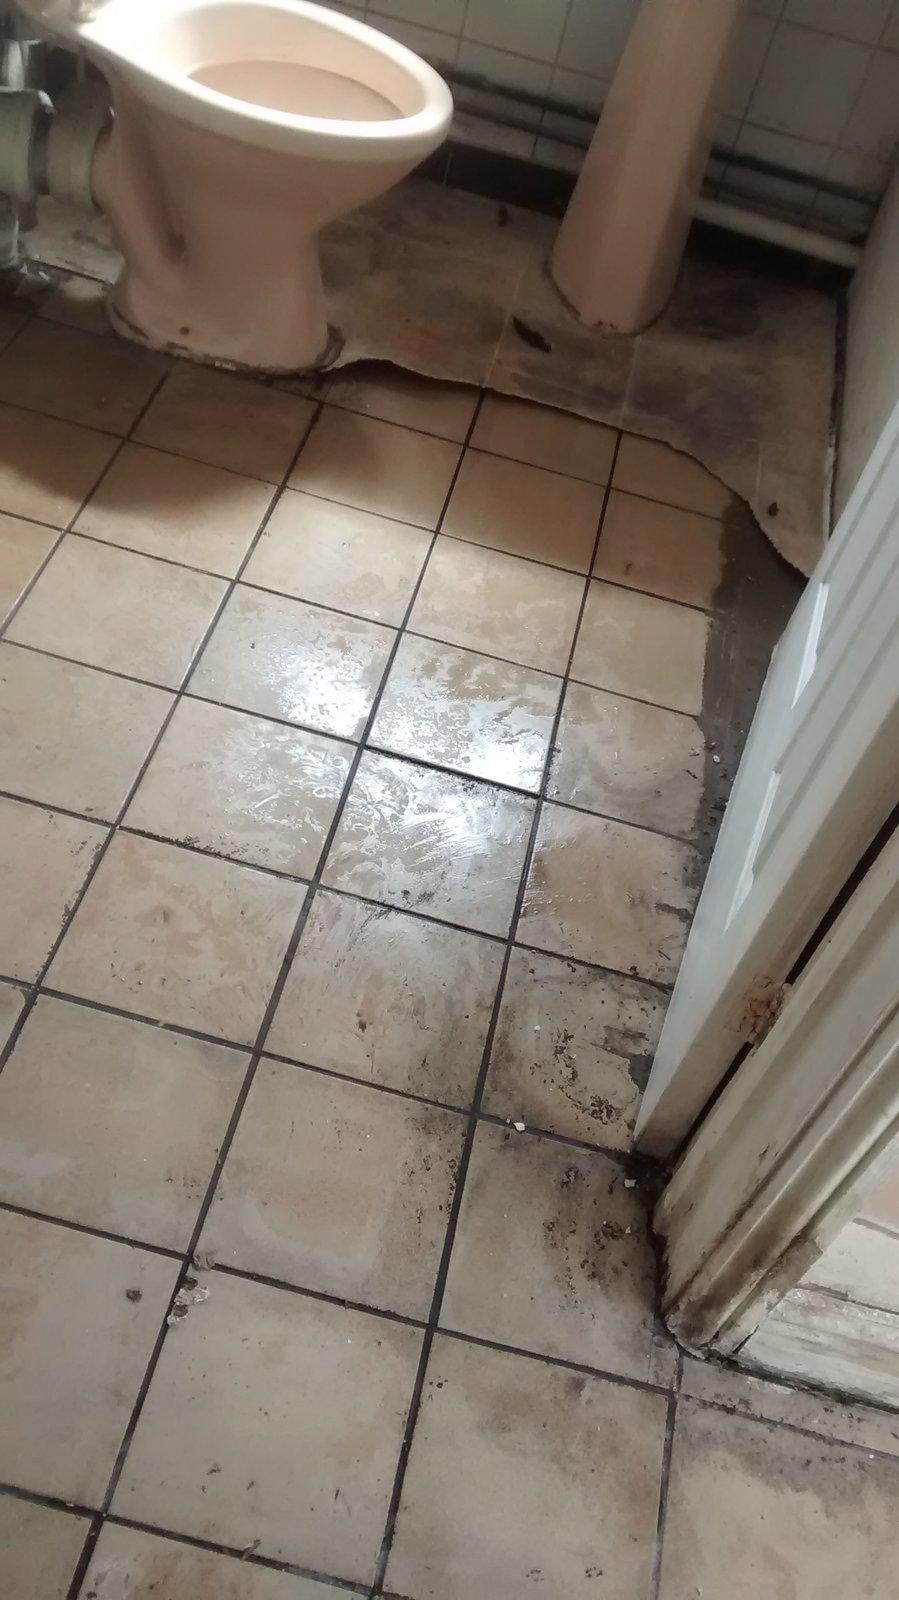 Water Under Vinyl In Kitchen Diynot, Water Under Tile Floor In Bathroom